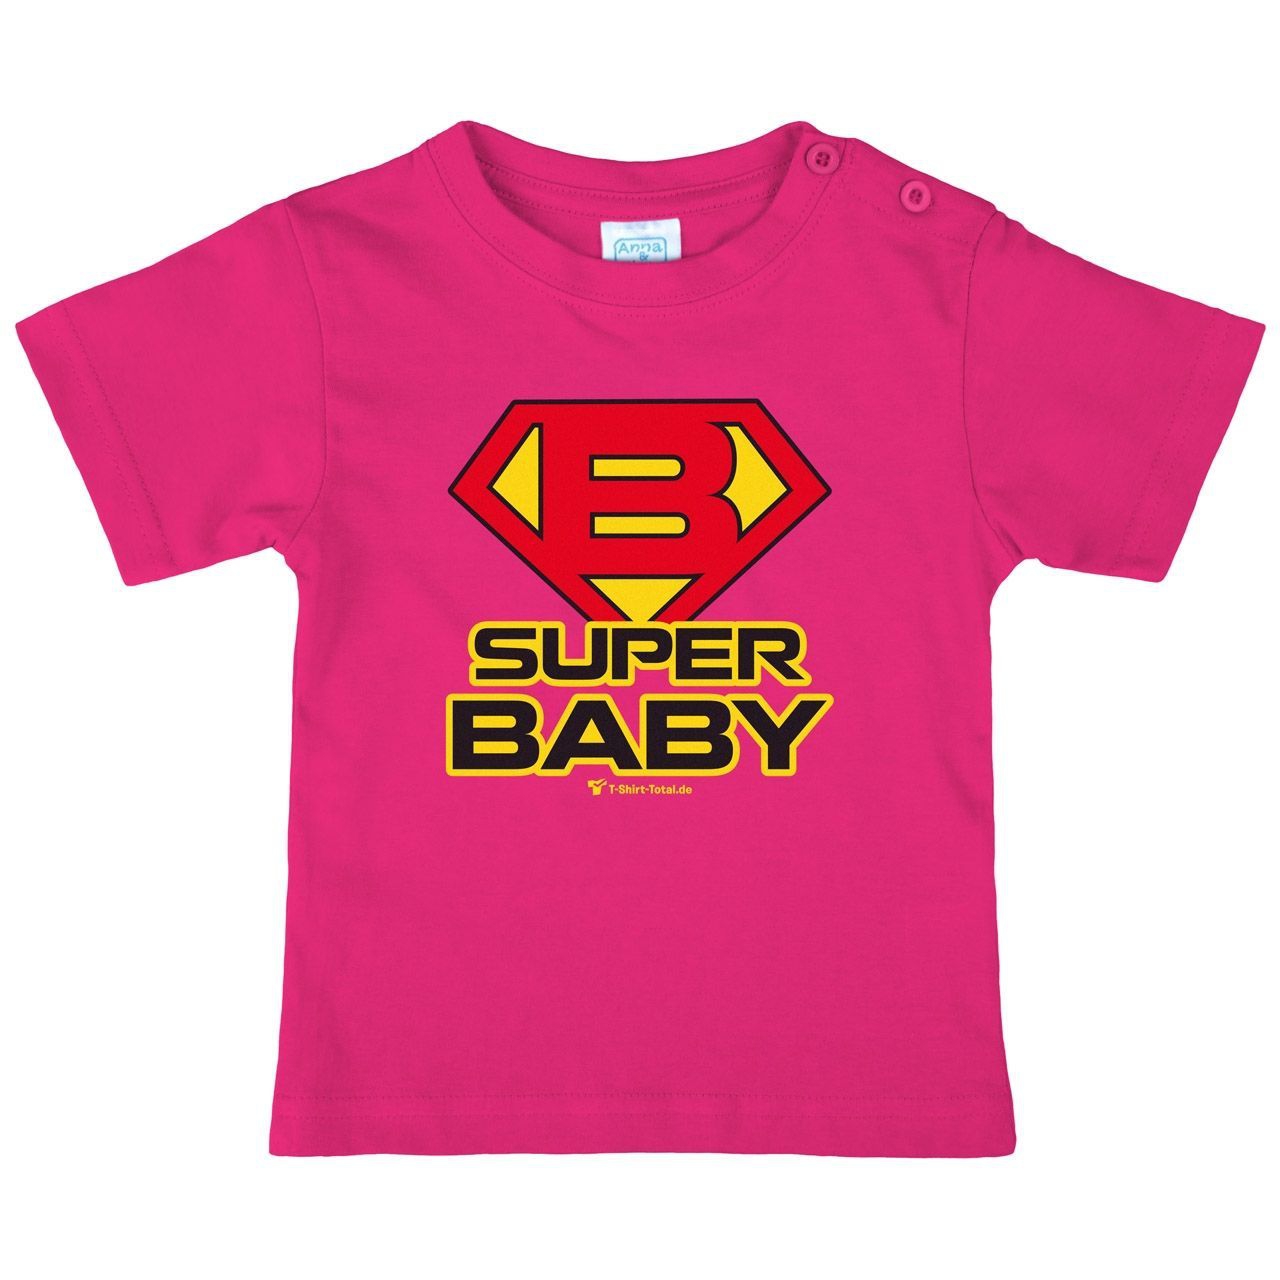 Super Baby Kinder T-Shirt pink 92